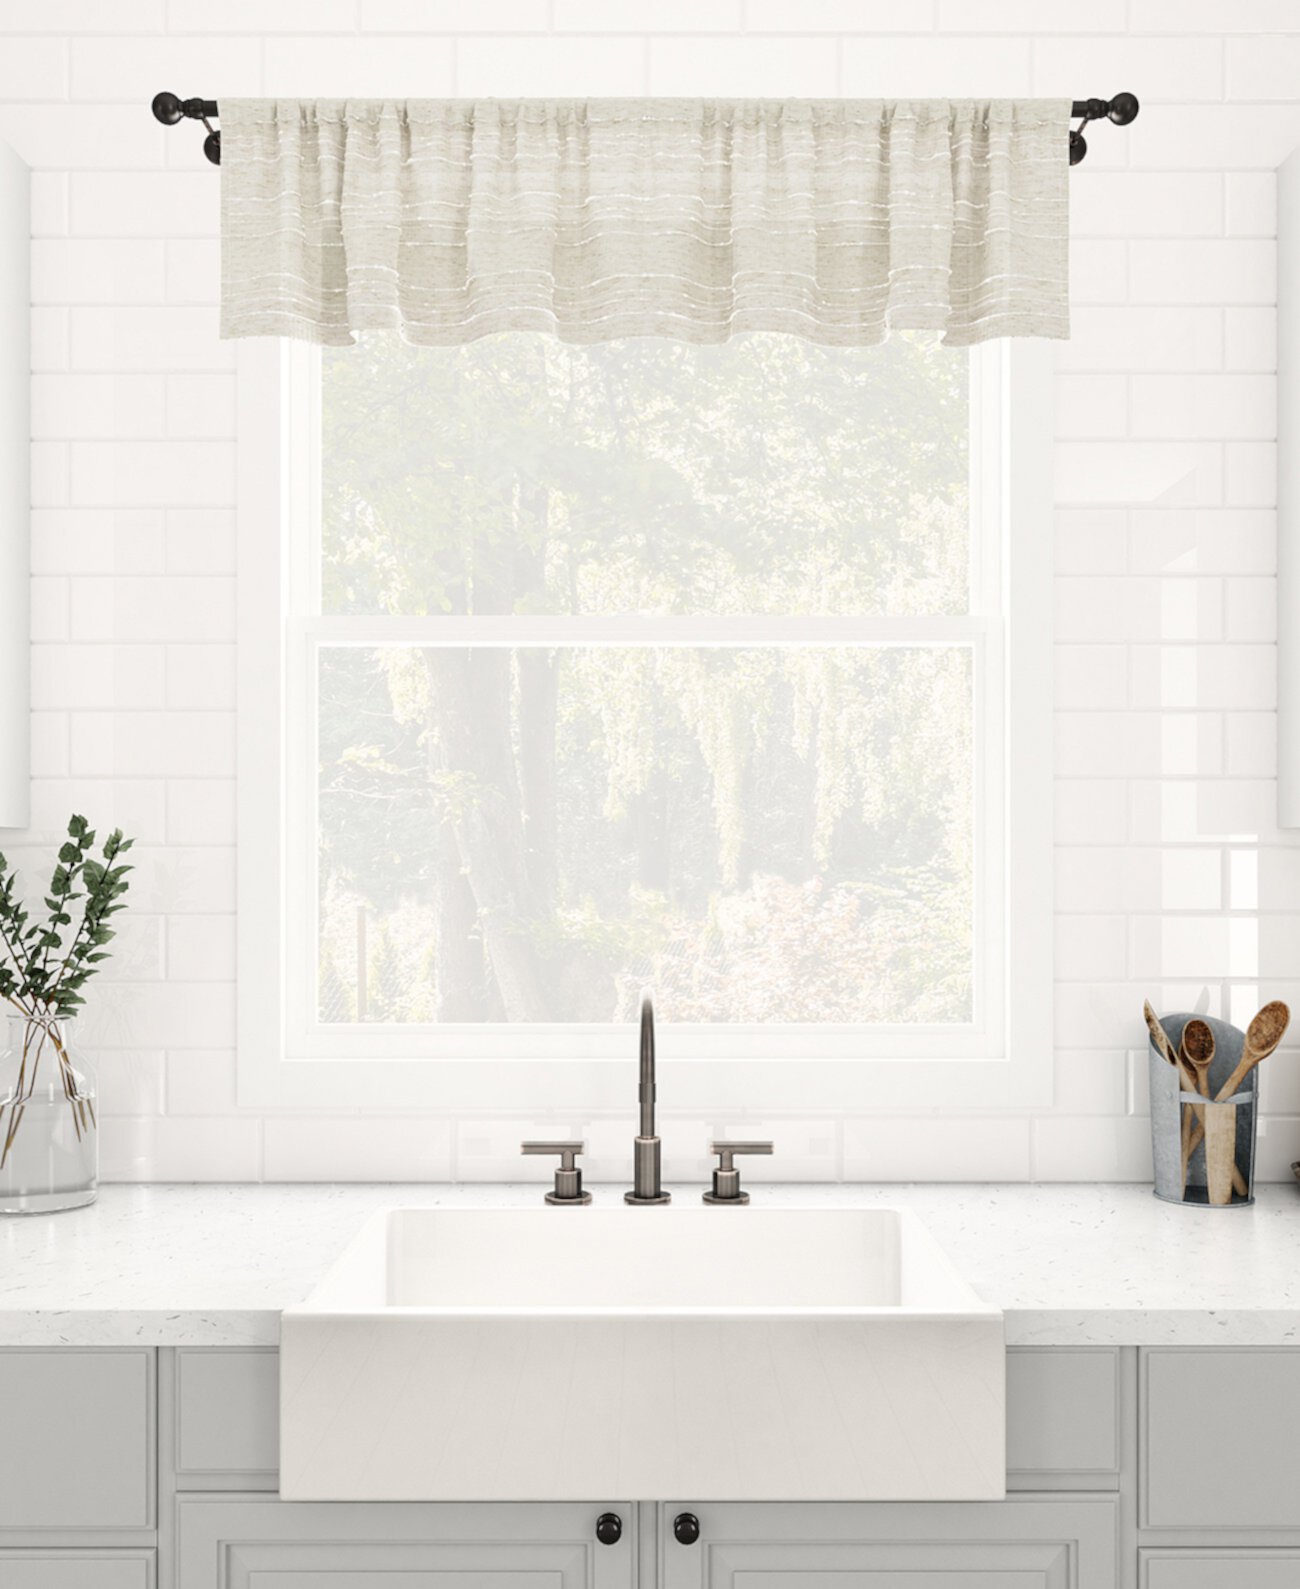 Текстурированная полоска, пыленепроницаемая прозрачная занавеска для кафе, 52 "x 14" Clean Window